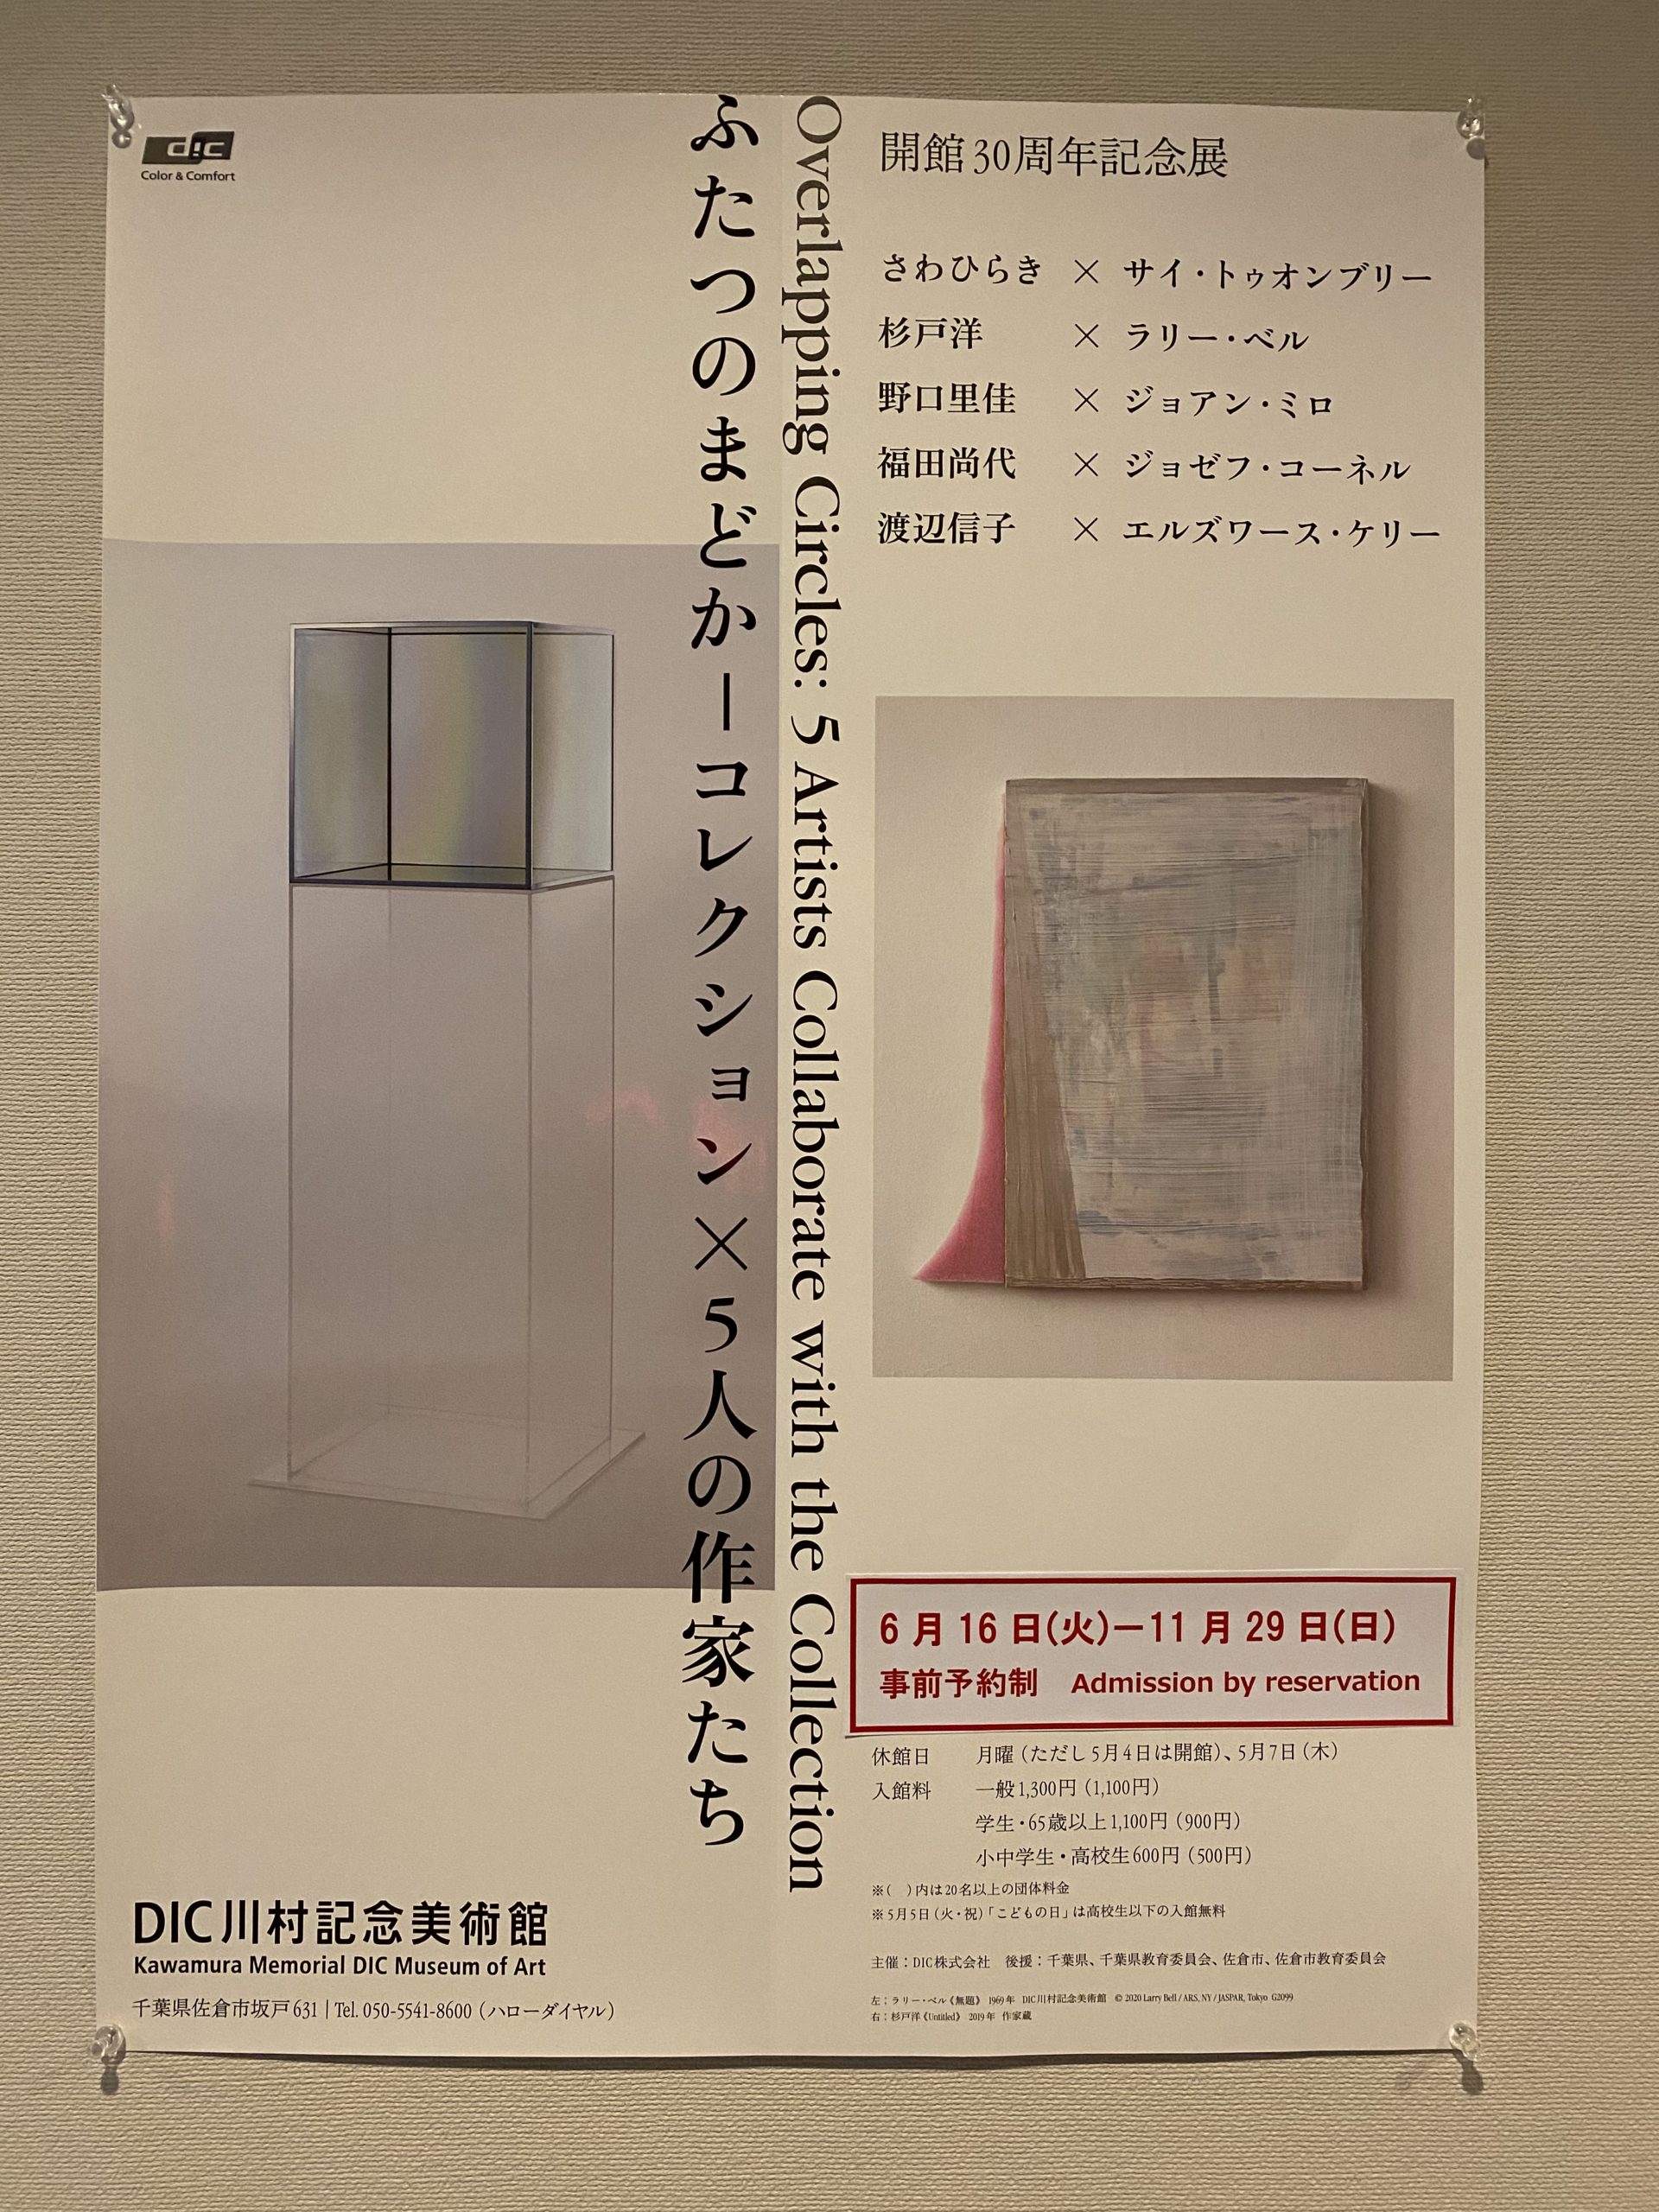 「ふたつのまどかーコレクション×5人の作家」展＠DIC川村記念美術館